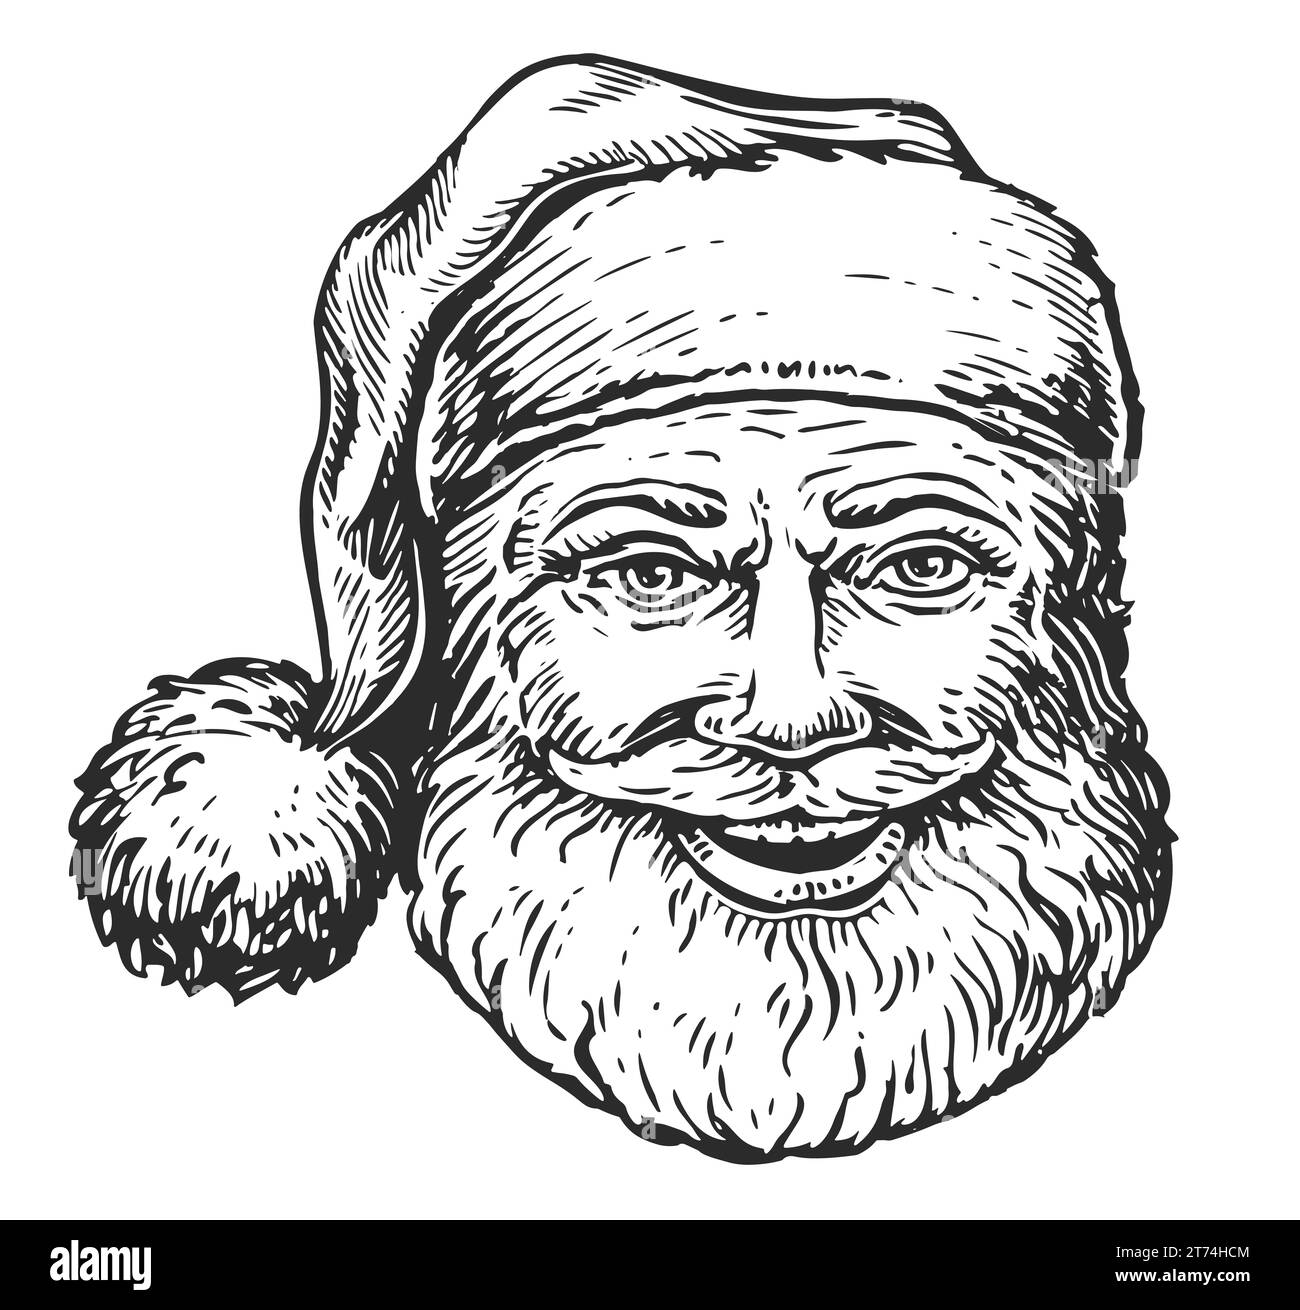 Alegre sonriente Santa Claus. Retrato dibujado a mano del símbolo de Navidad, ilustración Foto de stock